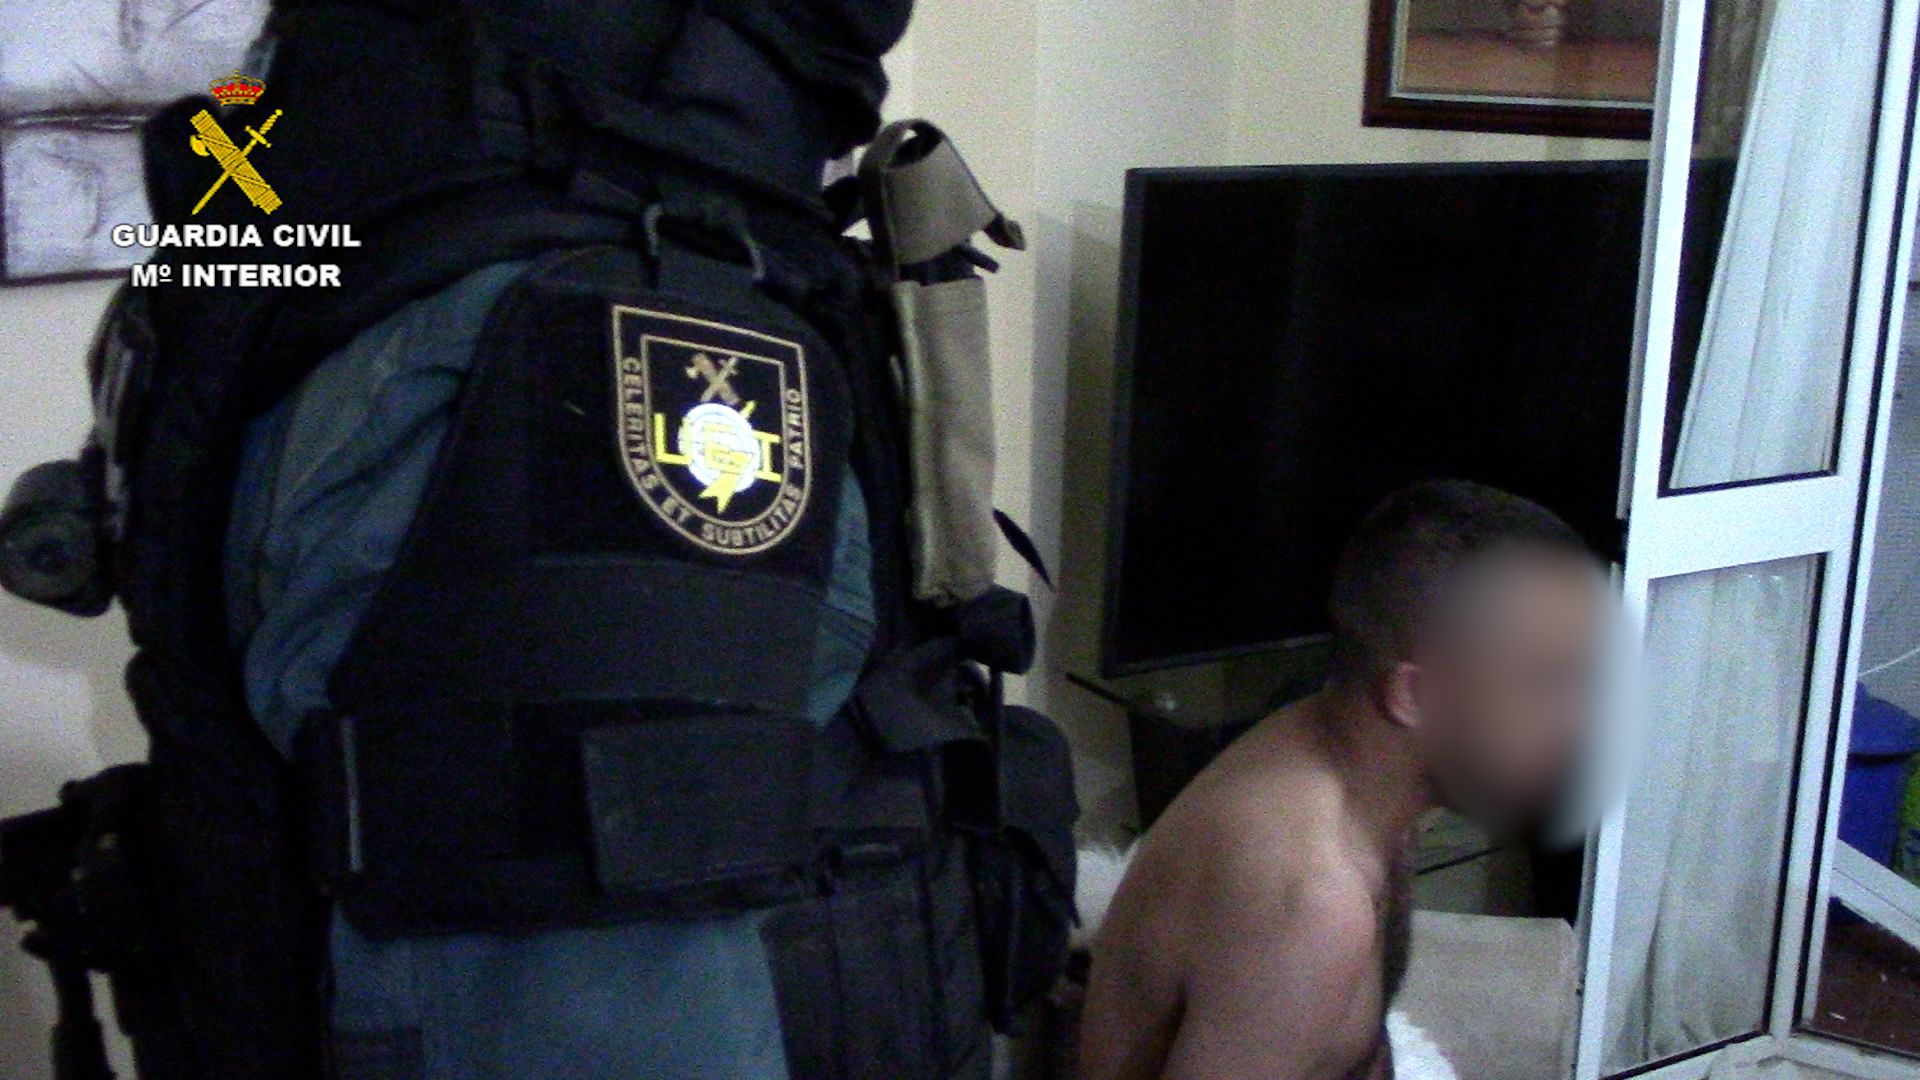 La detención en una vivienda durante un registro. FOTO: Guardia Civil